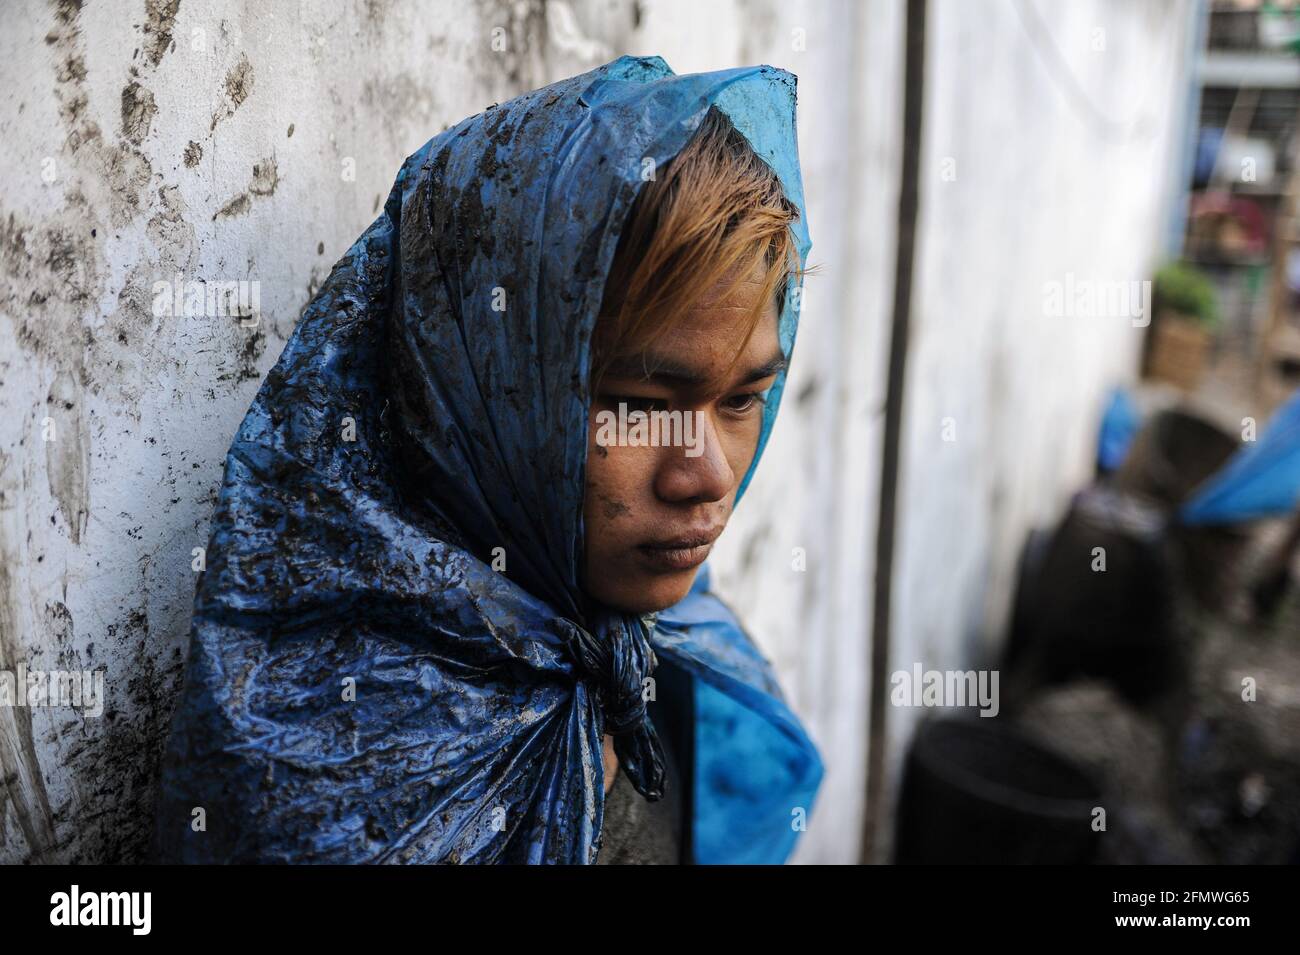 19.02.2014, Yangon, Myanmar, Asien - Porträt eines jungen Abwasserreinigers, der einfache Schutzkleidung aus zerrissenen Plastiktüten trägt, die Abflüsse reinigt. Stockfoto